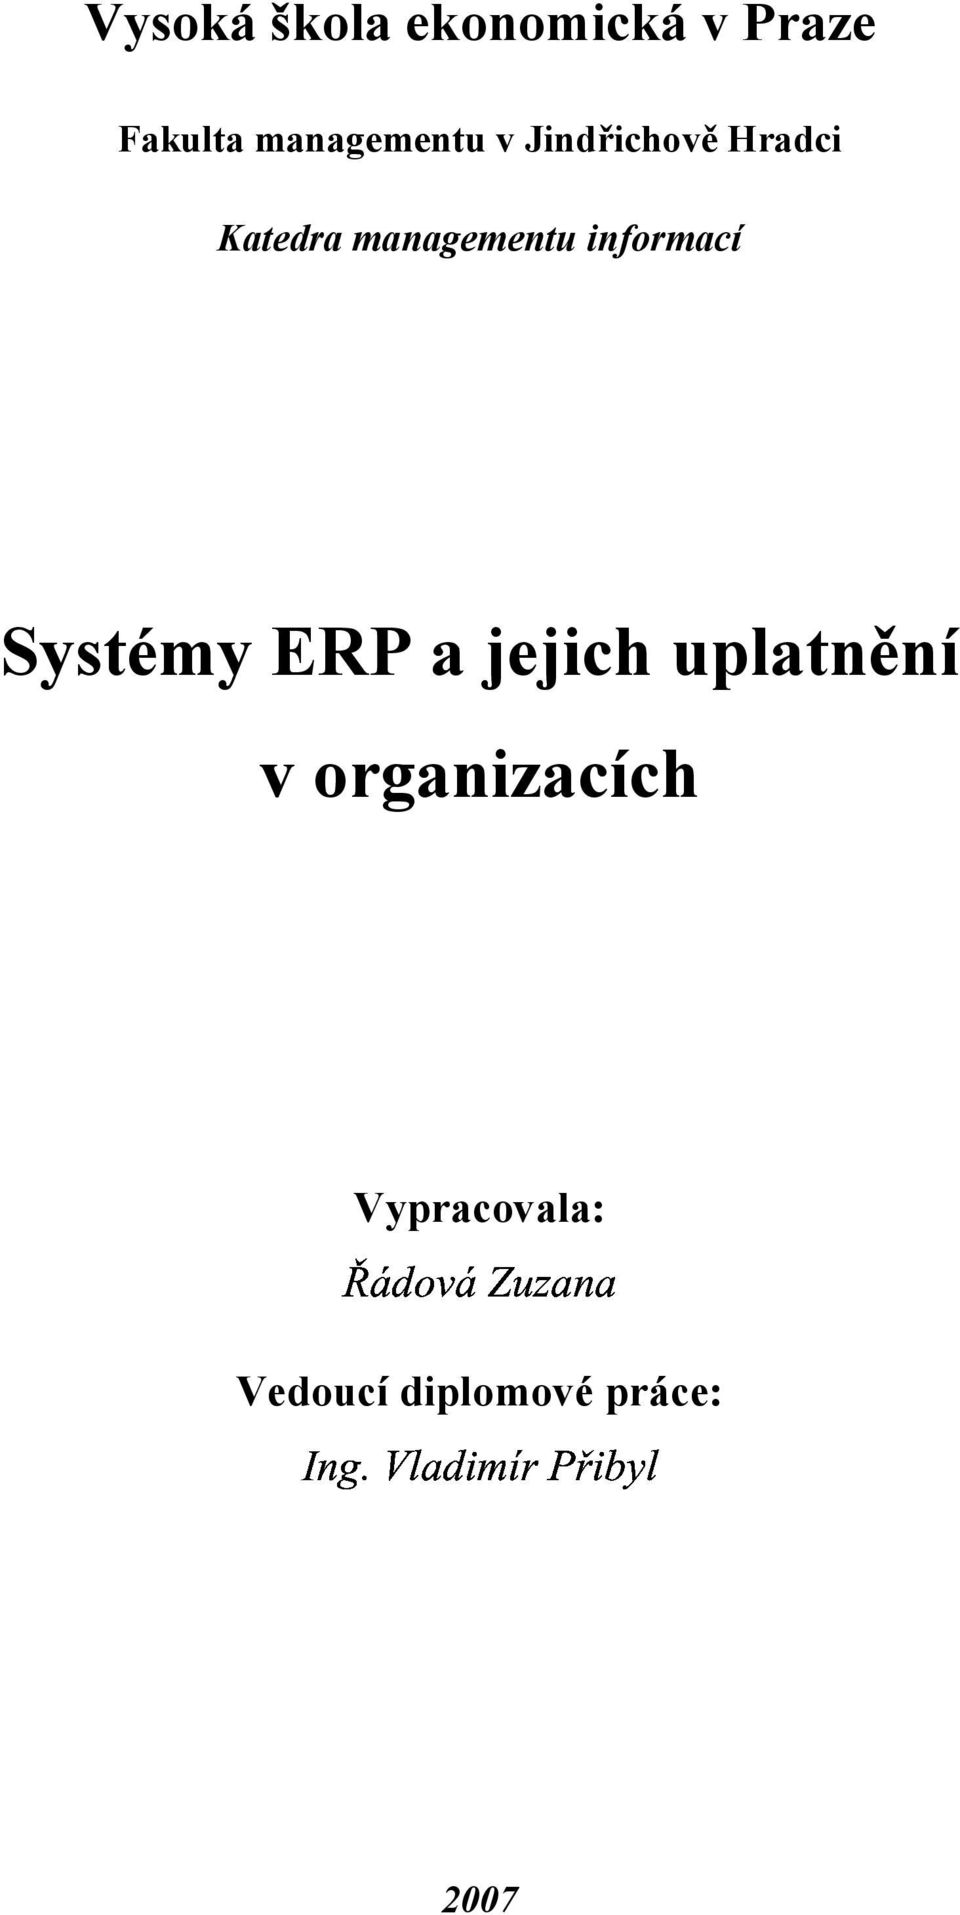 managementu informací Systémy ERP a jejich